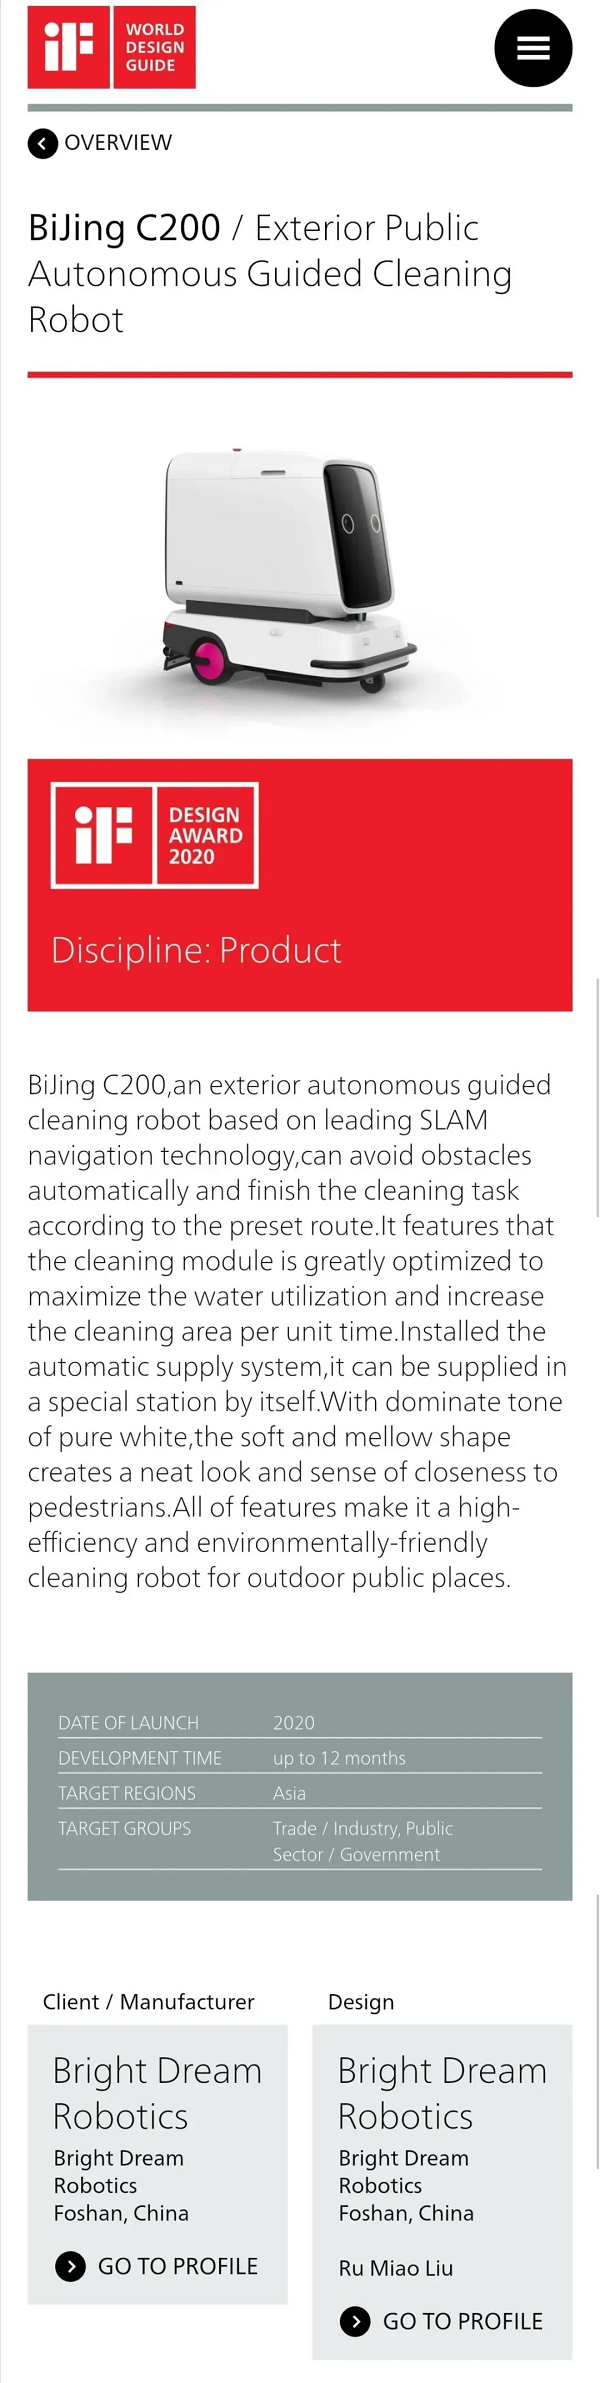 商用清洁机器人哪个牌子好?博智林推出BijingC200获iF产品设计奖